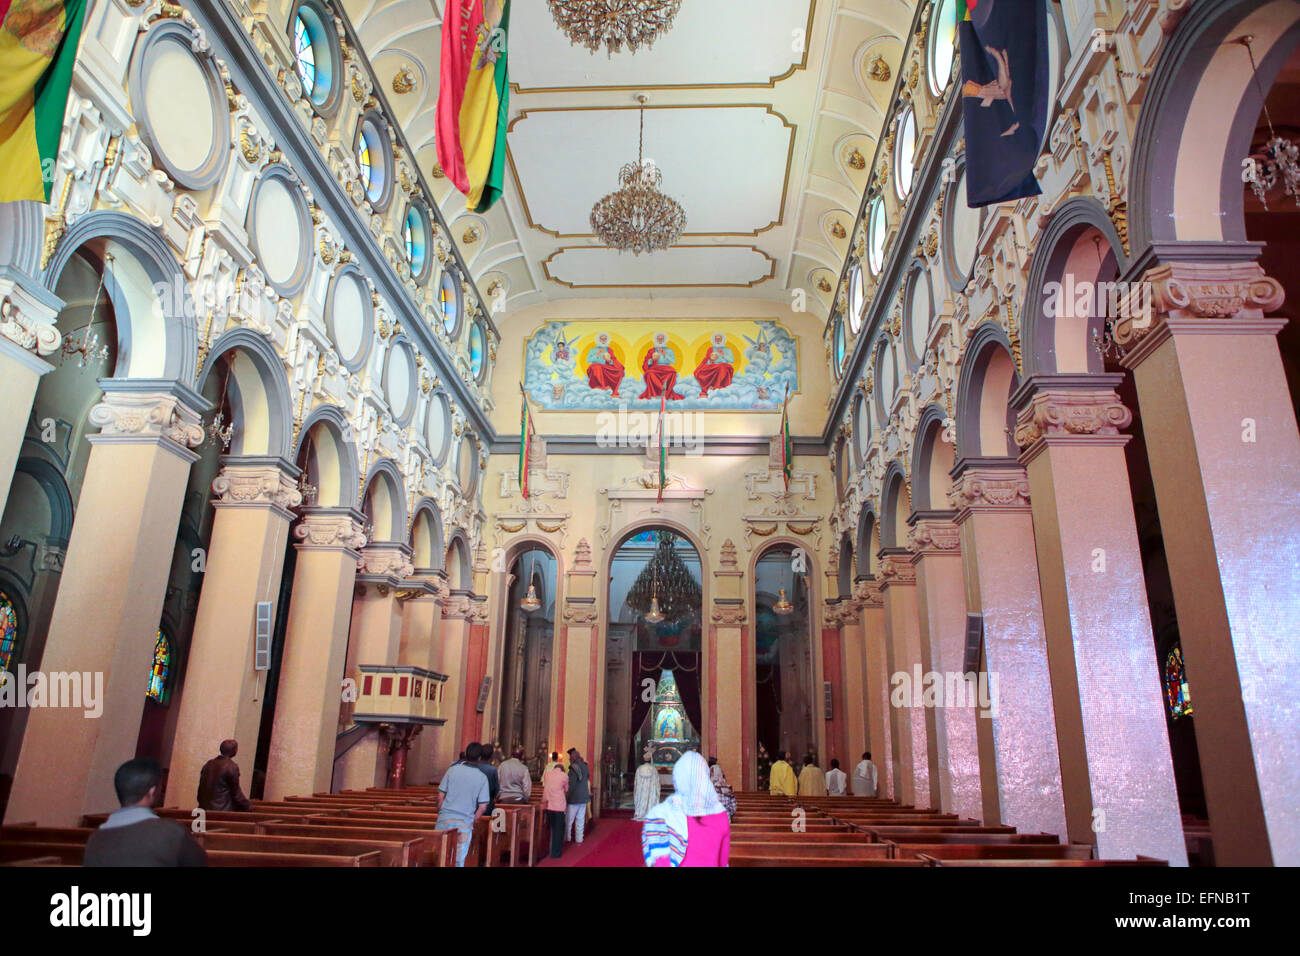 Holy Trinity cathedral, Addis Ababa, Ethiopia Stock Photo